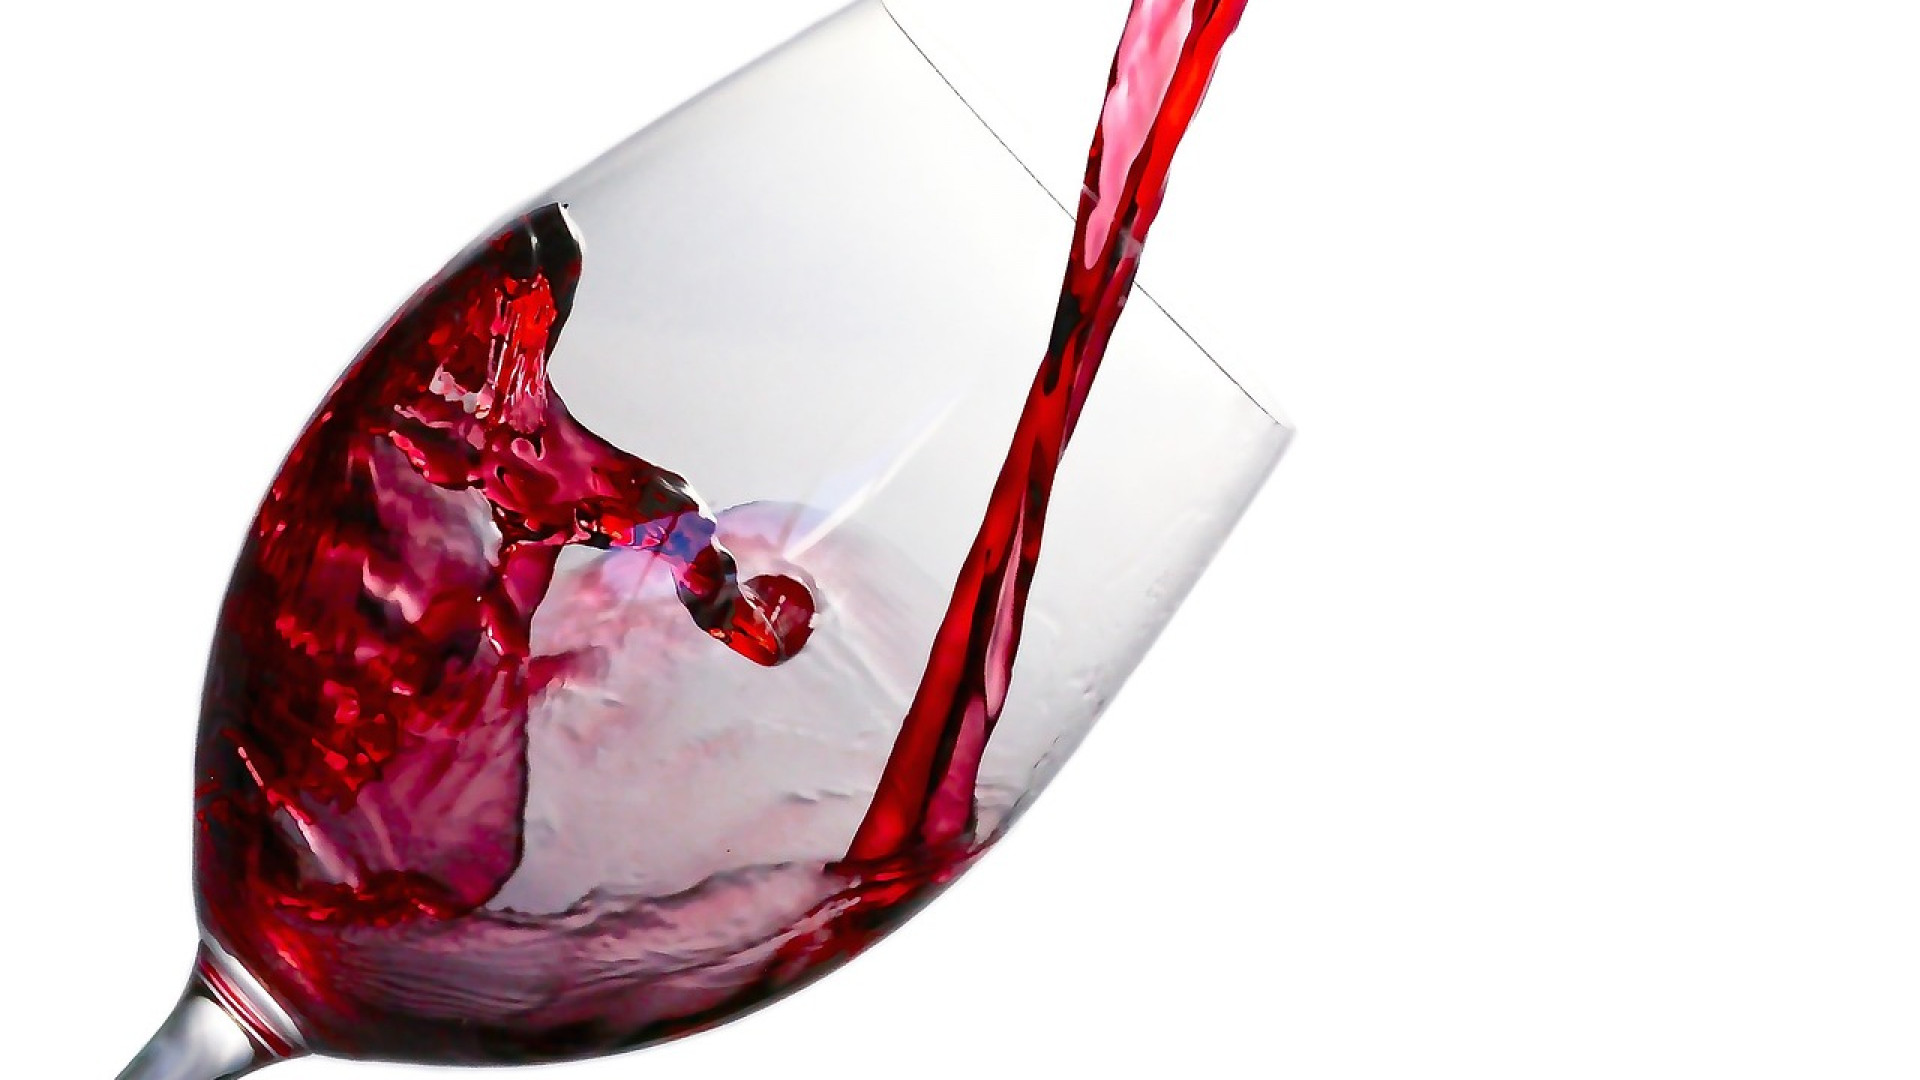 Blogs sur les vins : pourquoi les suivre ?